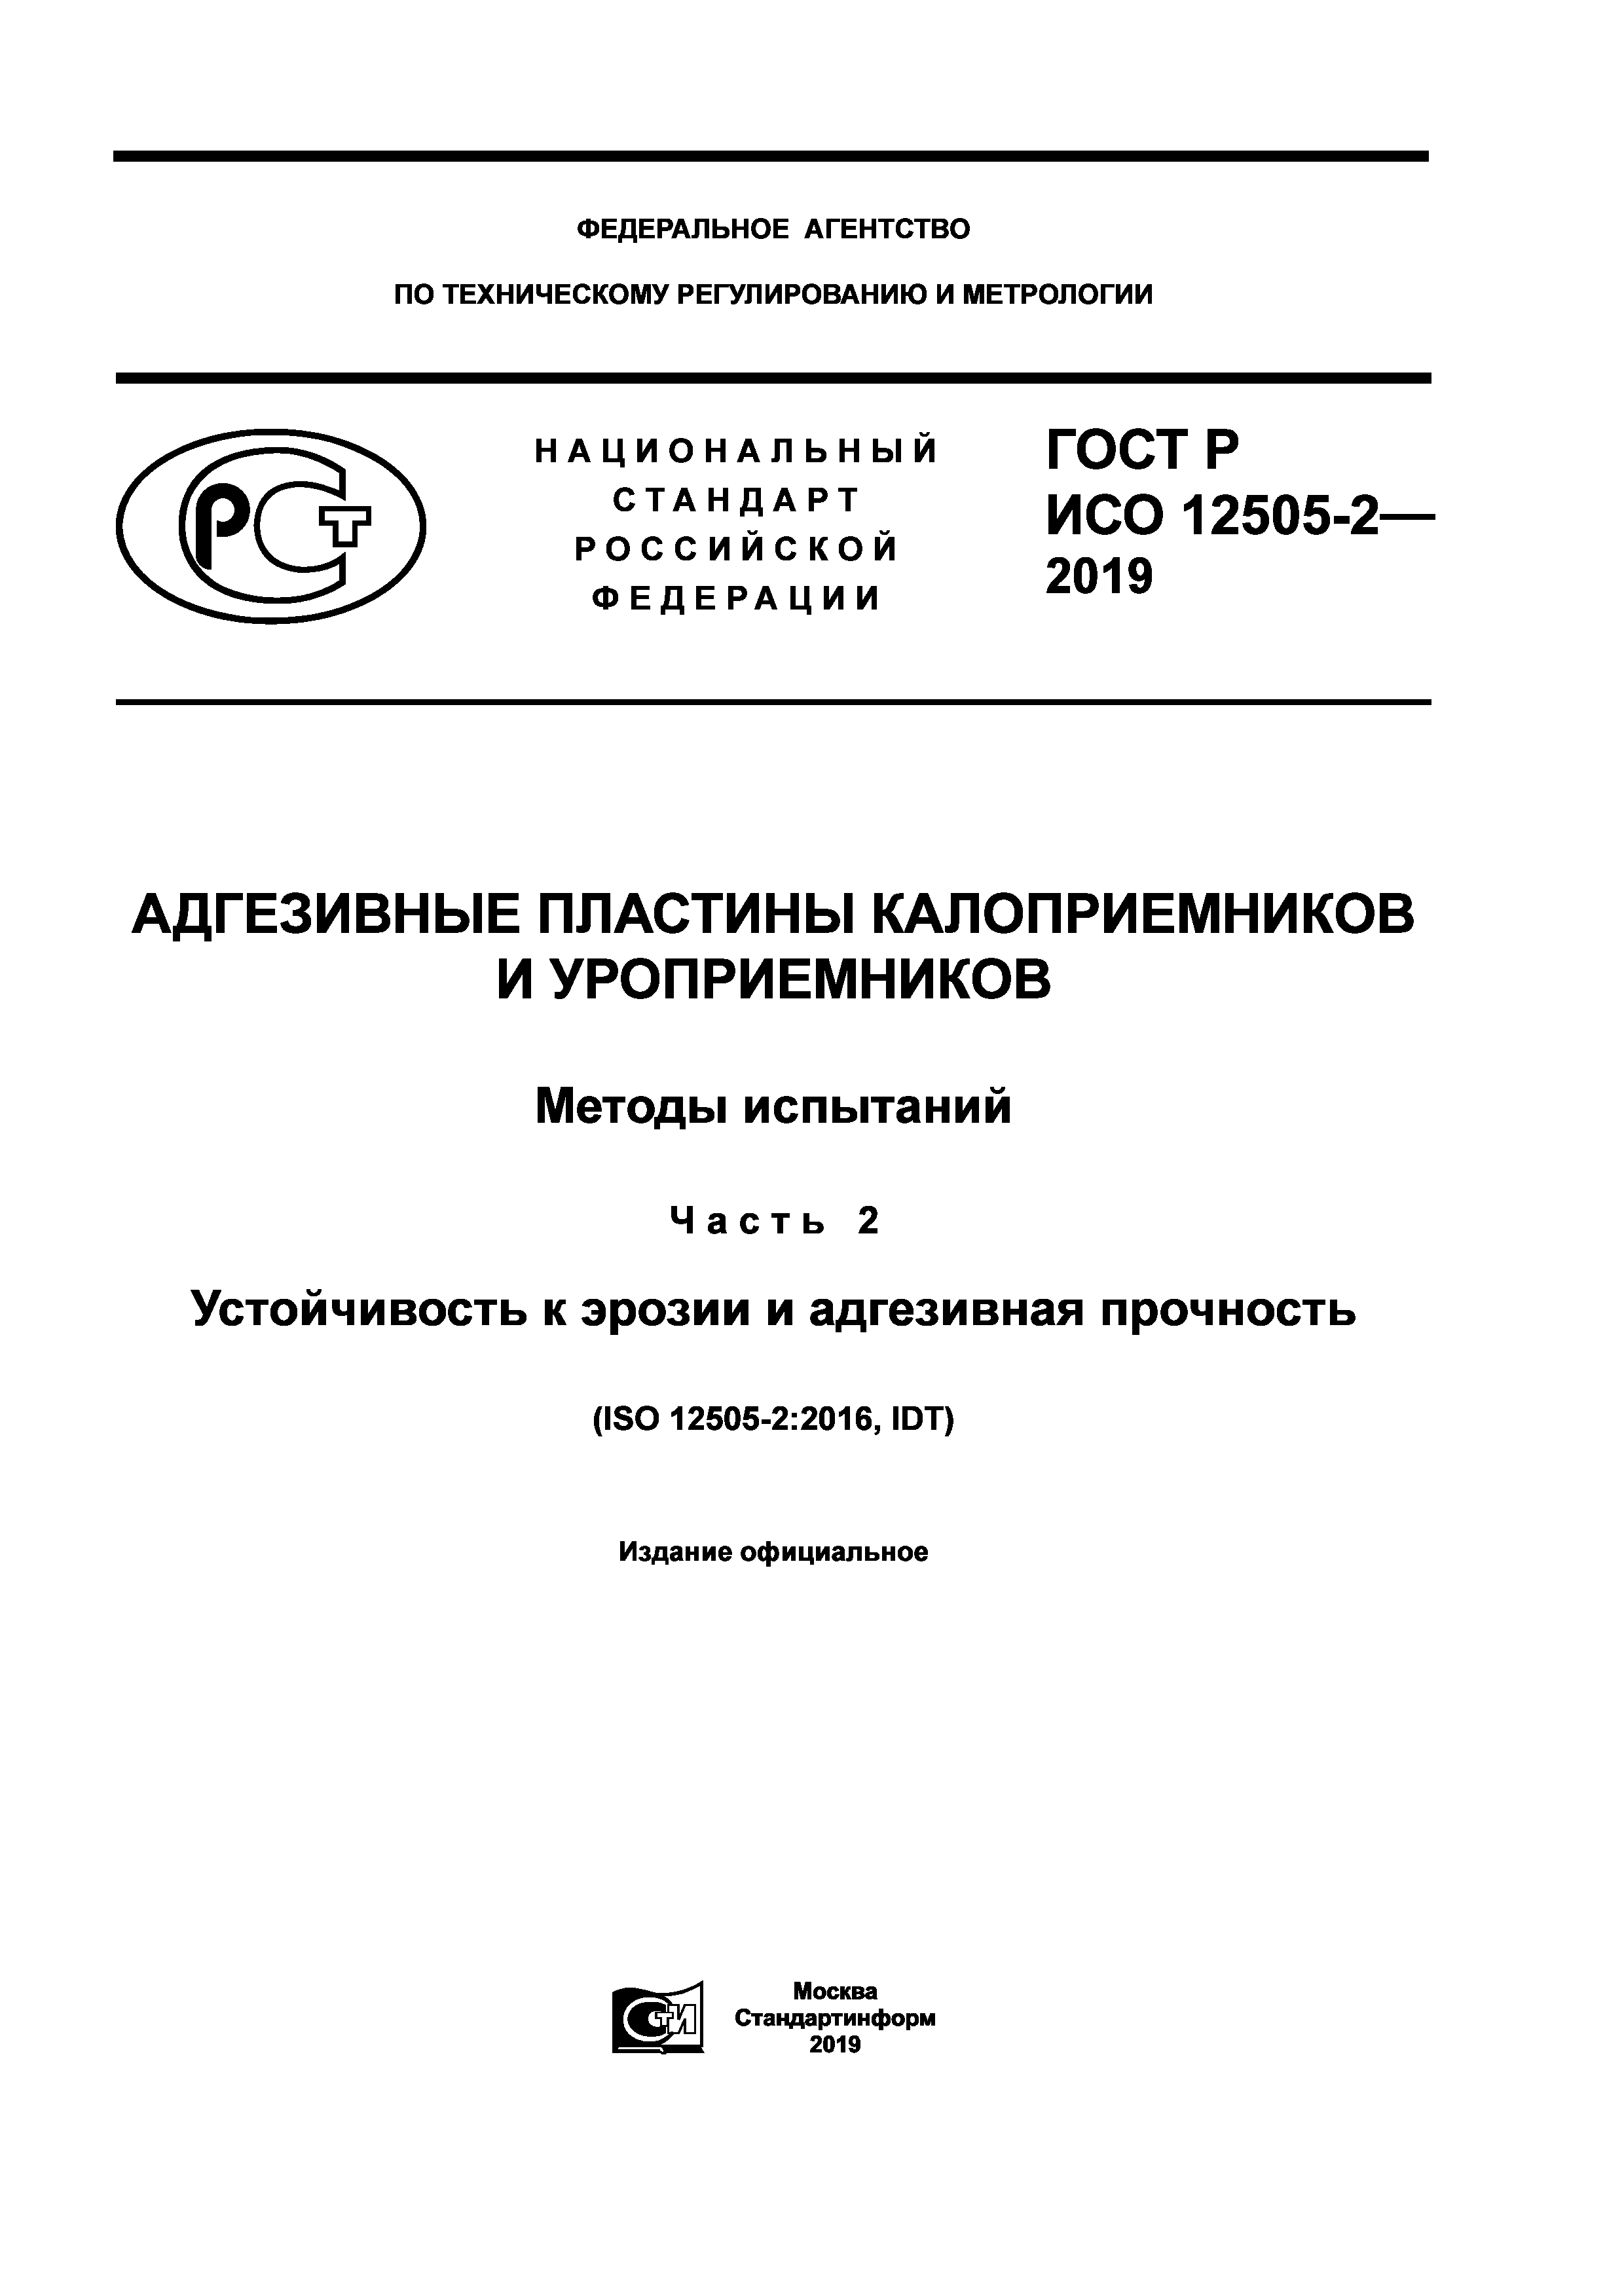 ГОСТ Р ИСО 12505-2-2019